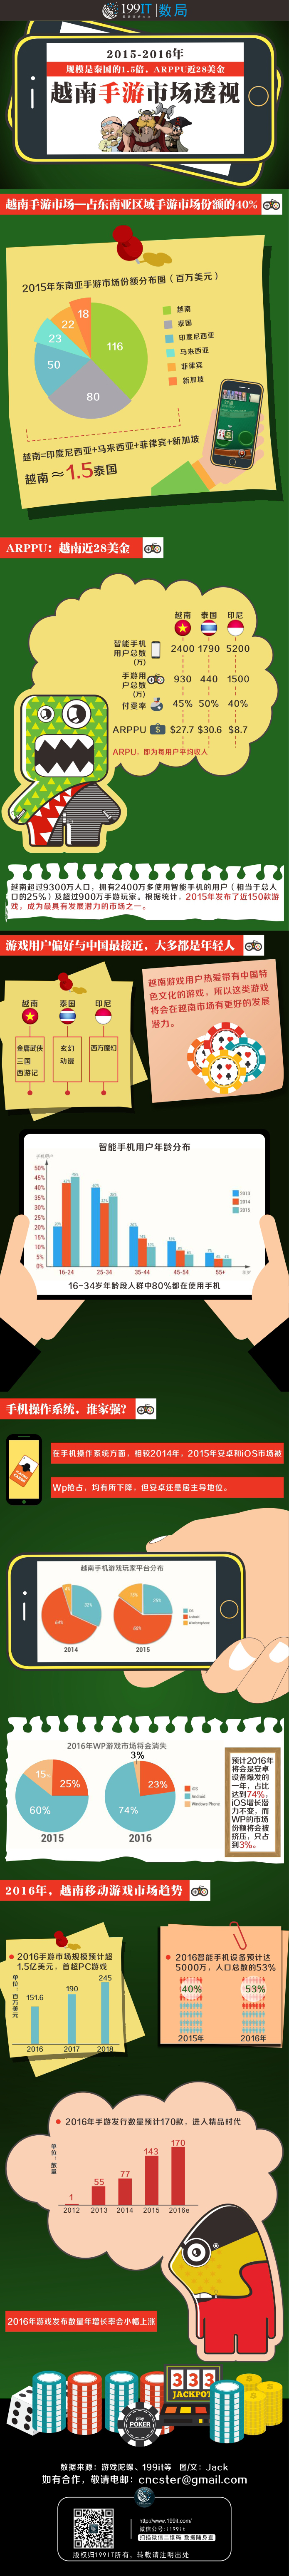 2015-2016年越南手游市场透视